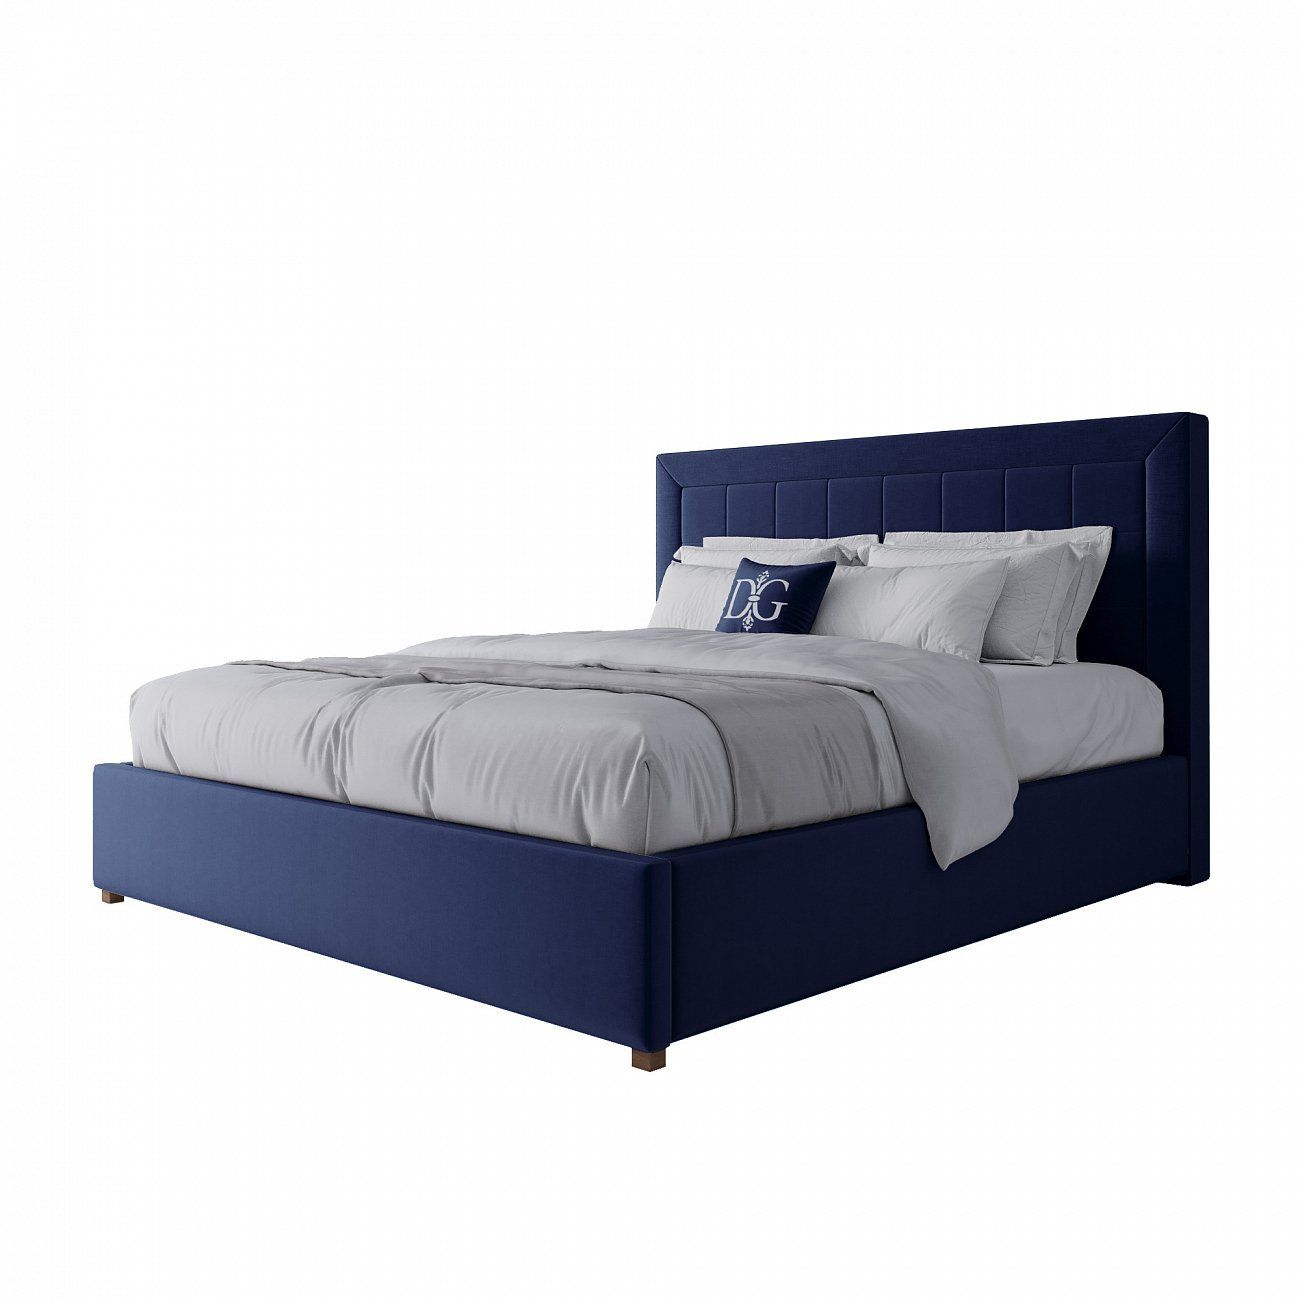 Кровать двуспальная 180х200 синяя Elizabeth